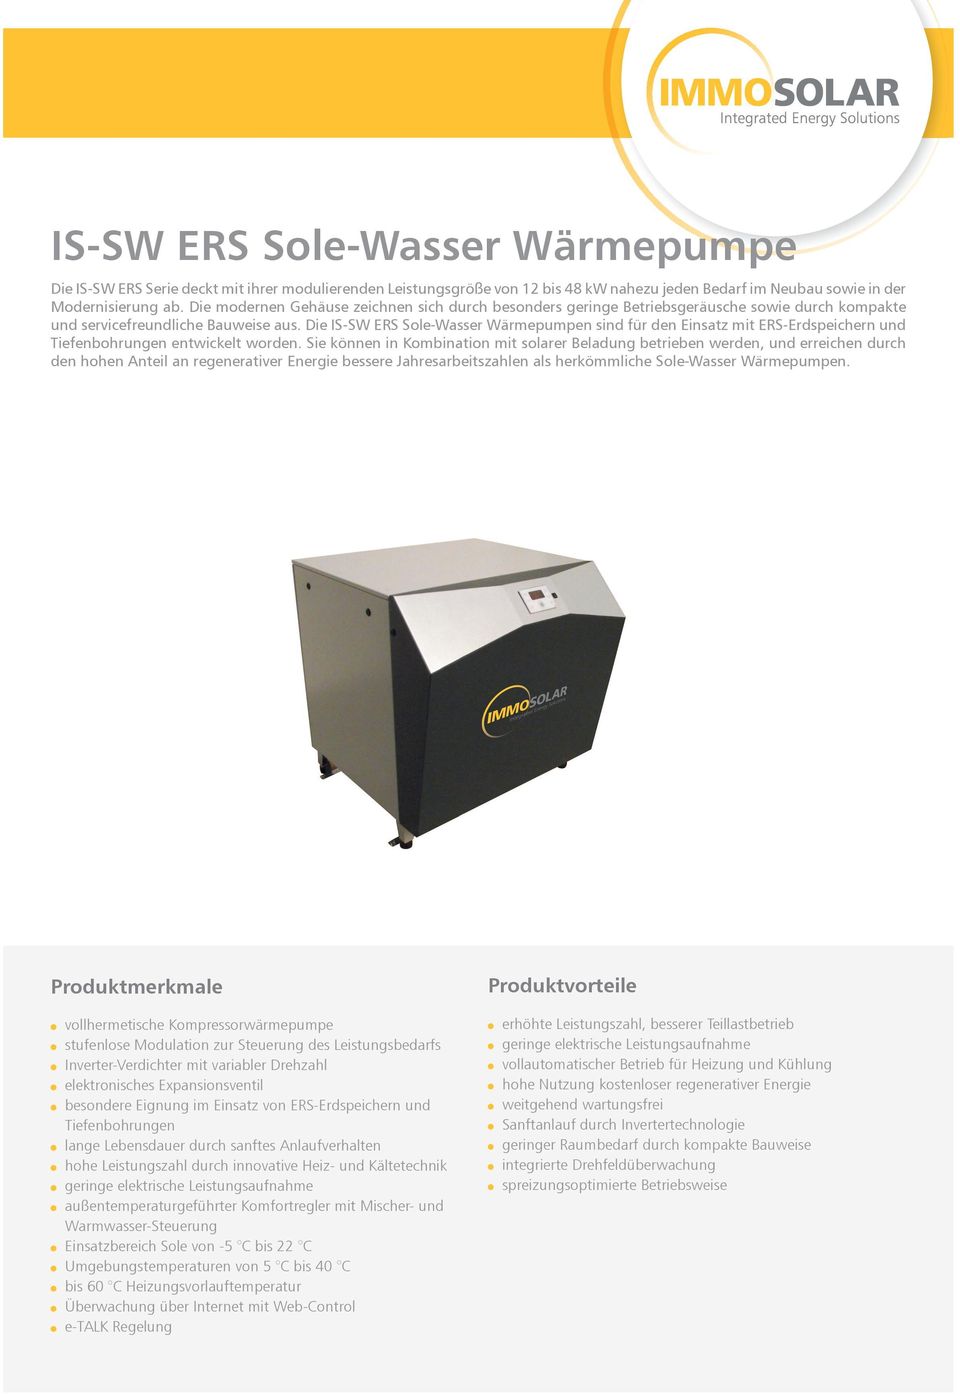 Die IS-SW ERS Sole-Wasser Wärmepumpen sind für den Einsatz mit ERS-Erdspeichern und Tiefenbohrungen entwickelt worden.